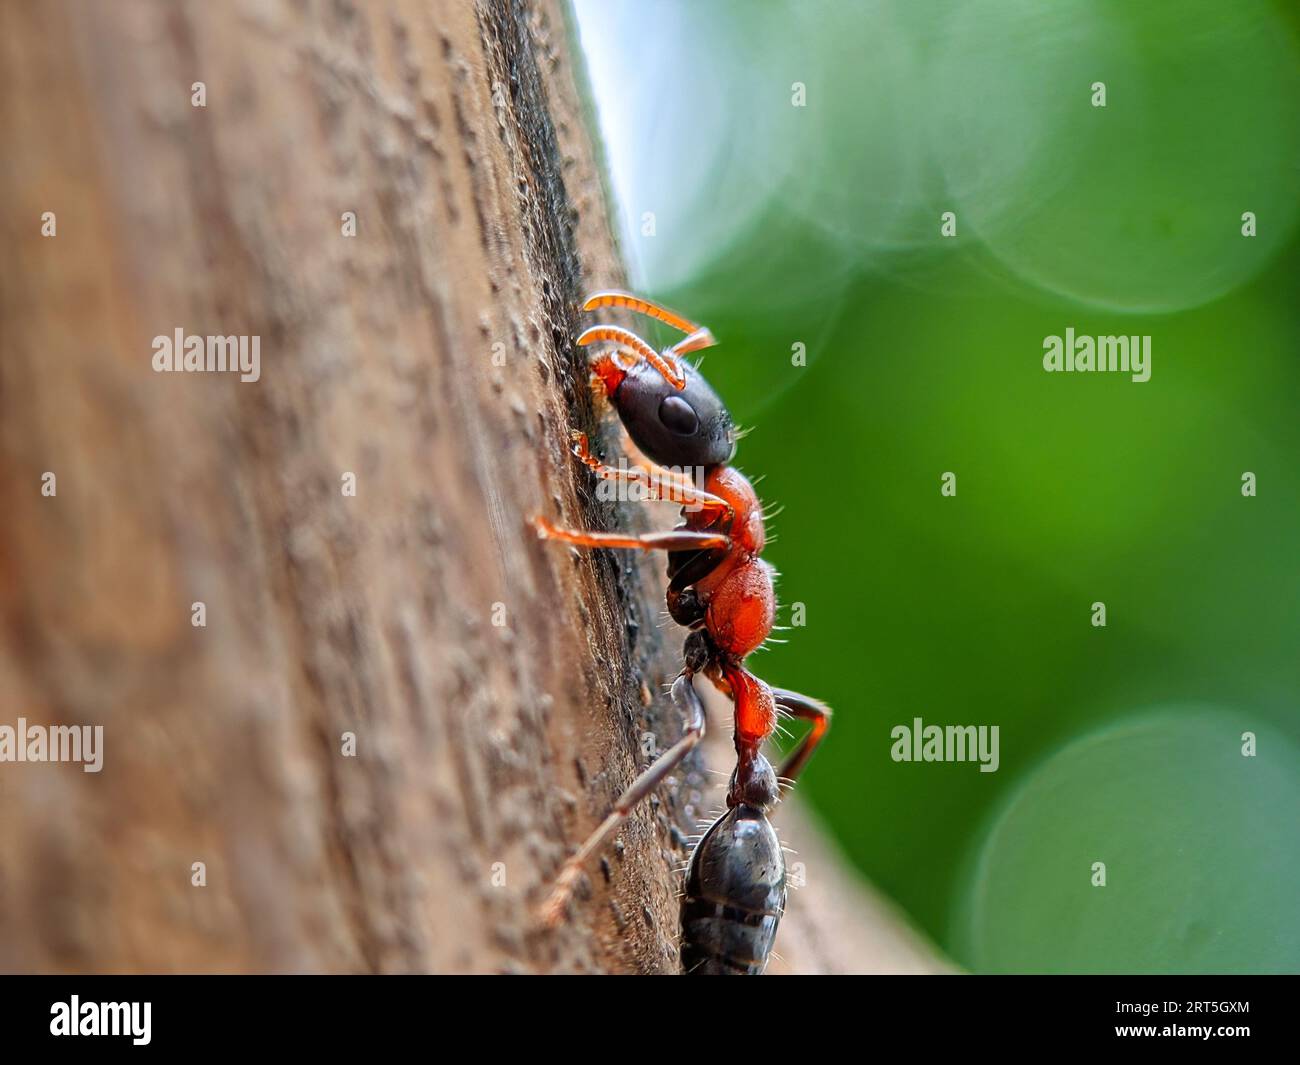 Primo piano di una formica gigante australiana di Toro, Myrmecia gratiosa, con occhi e mascelle a fuoco che camminano sui ramoscelli e cercano il cibo Foto Stock